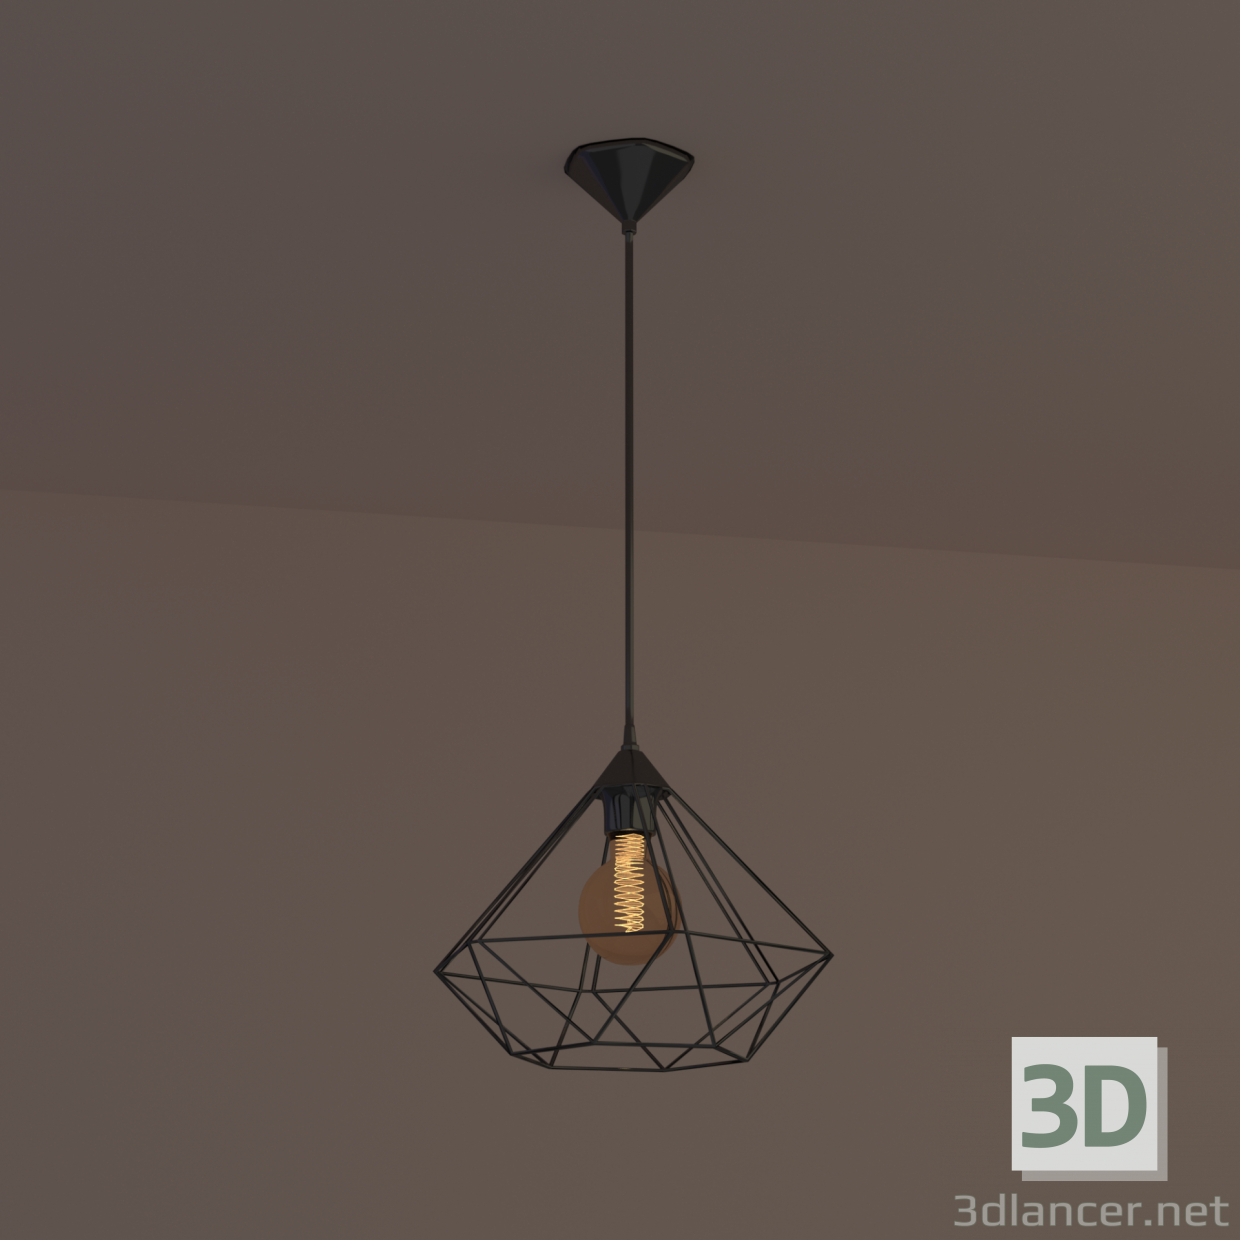 3D Loft tarzı lamba modeli satın - render